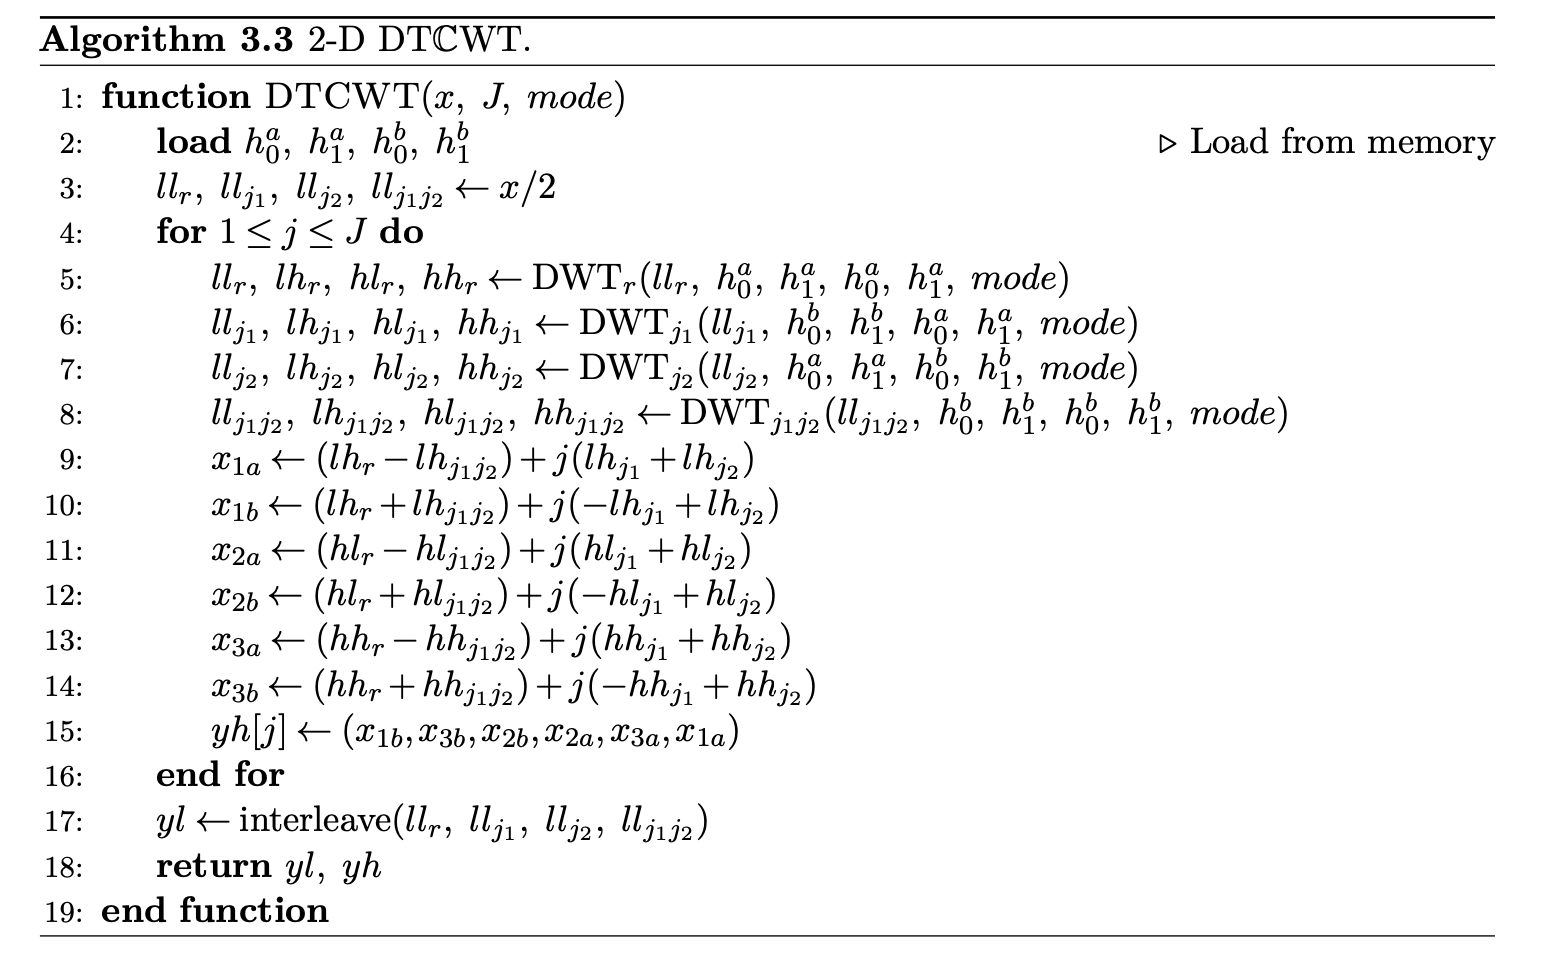 dtcwt- algorithm